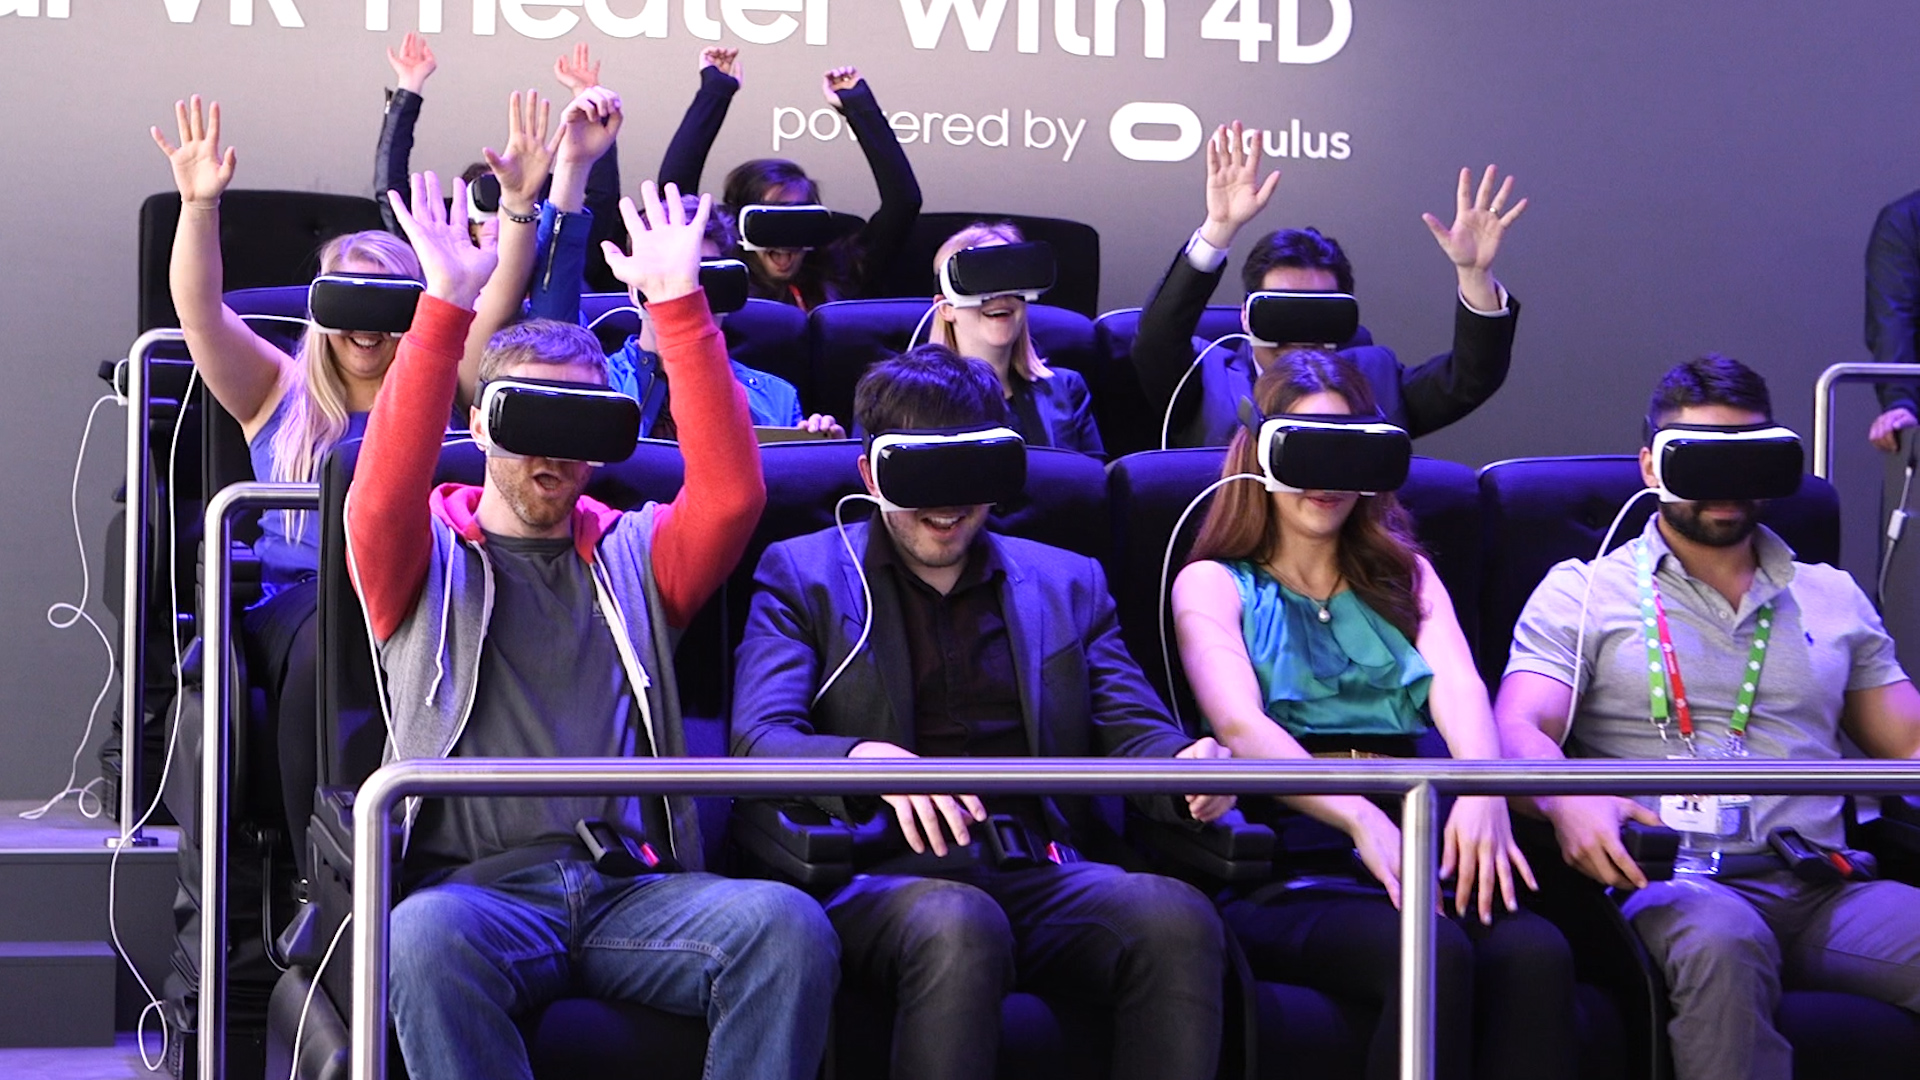 Realidad aumentada o virtual: ¿quién dominará el futuro?